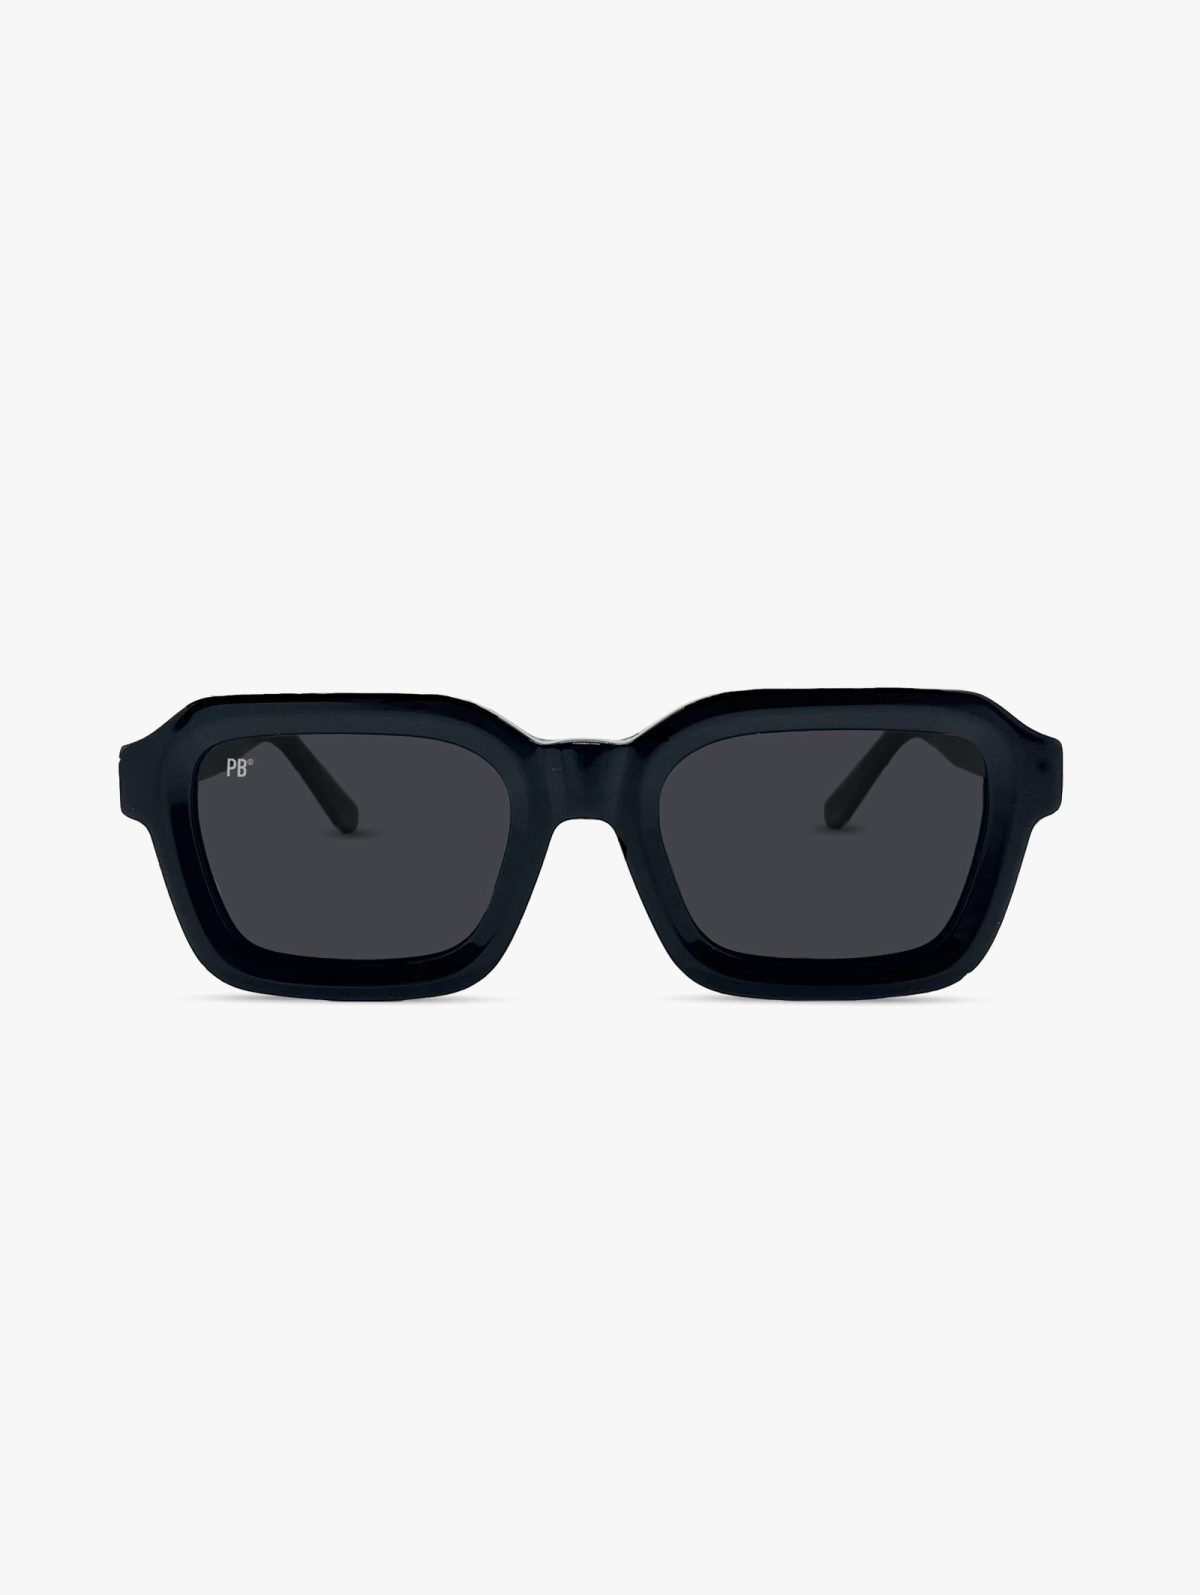 Festival zonnebril heren dames zwart rechthoekig vierkant pillenbrillen